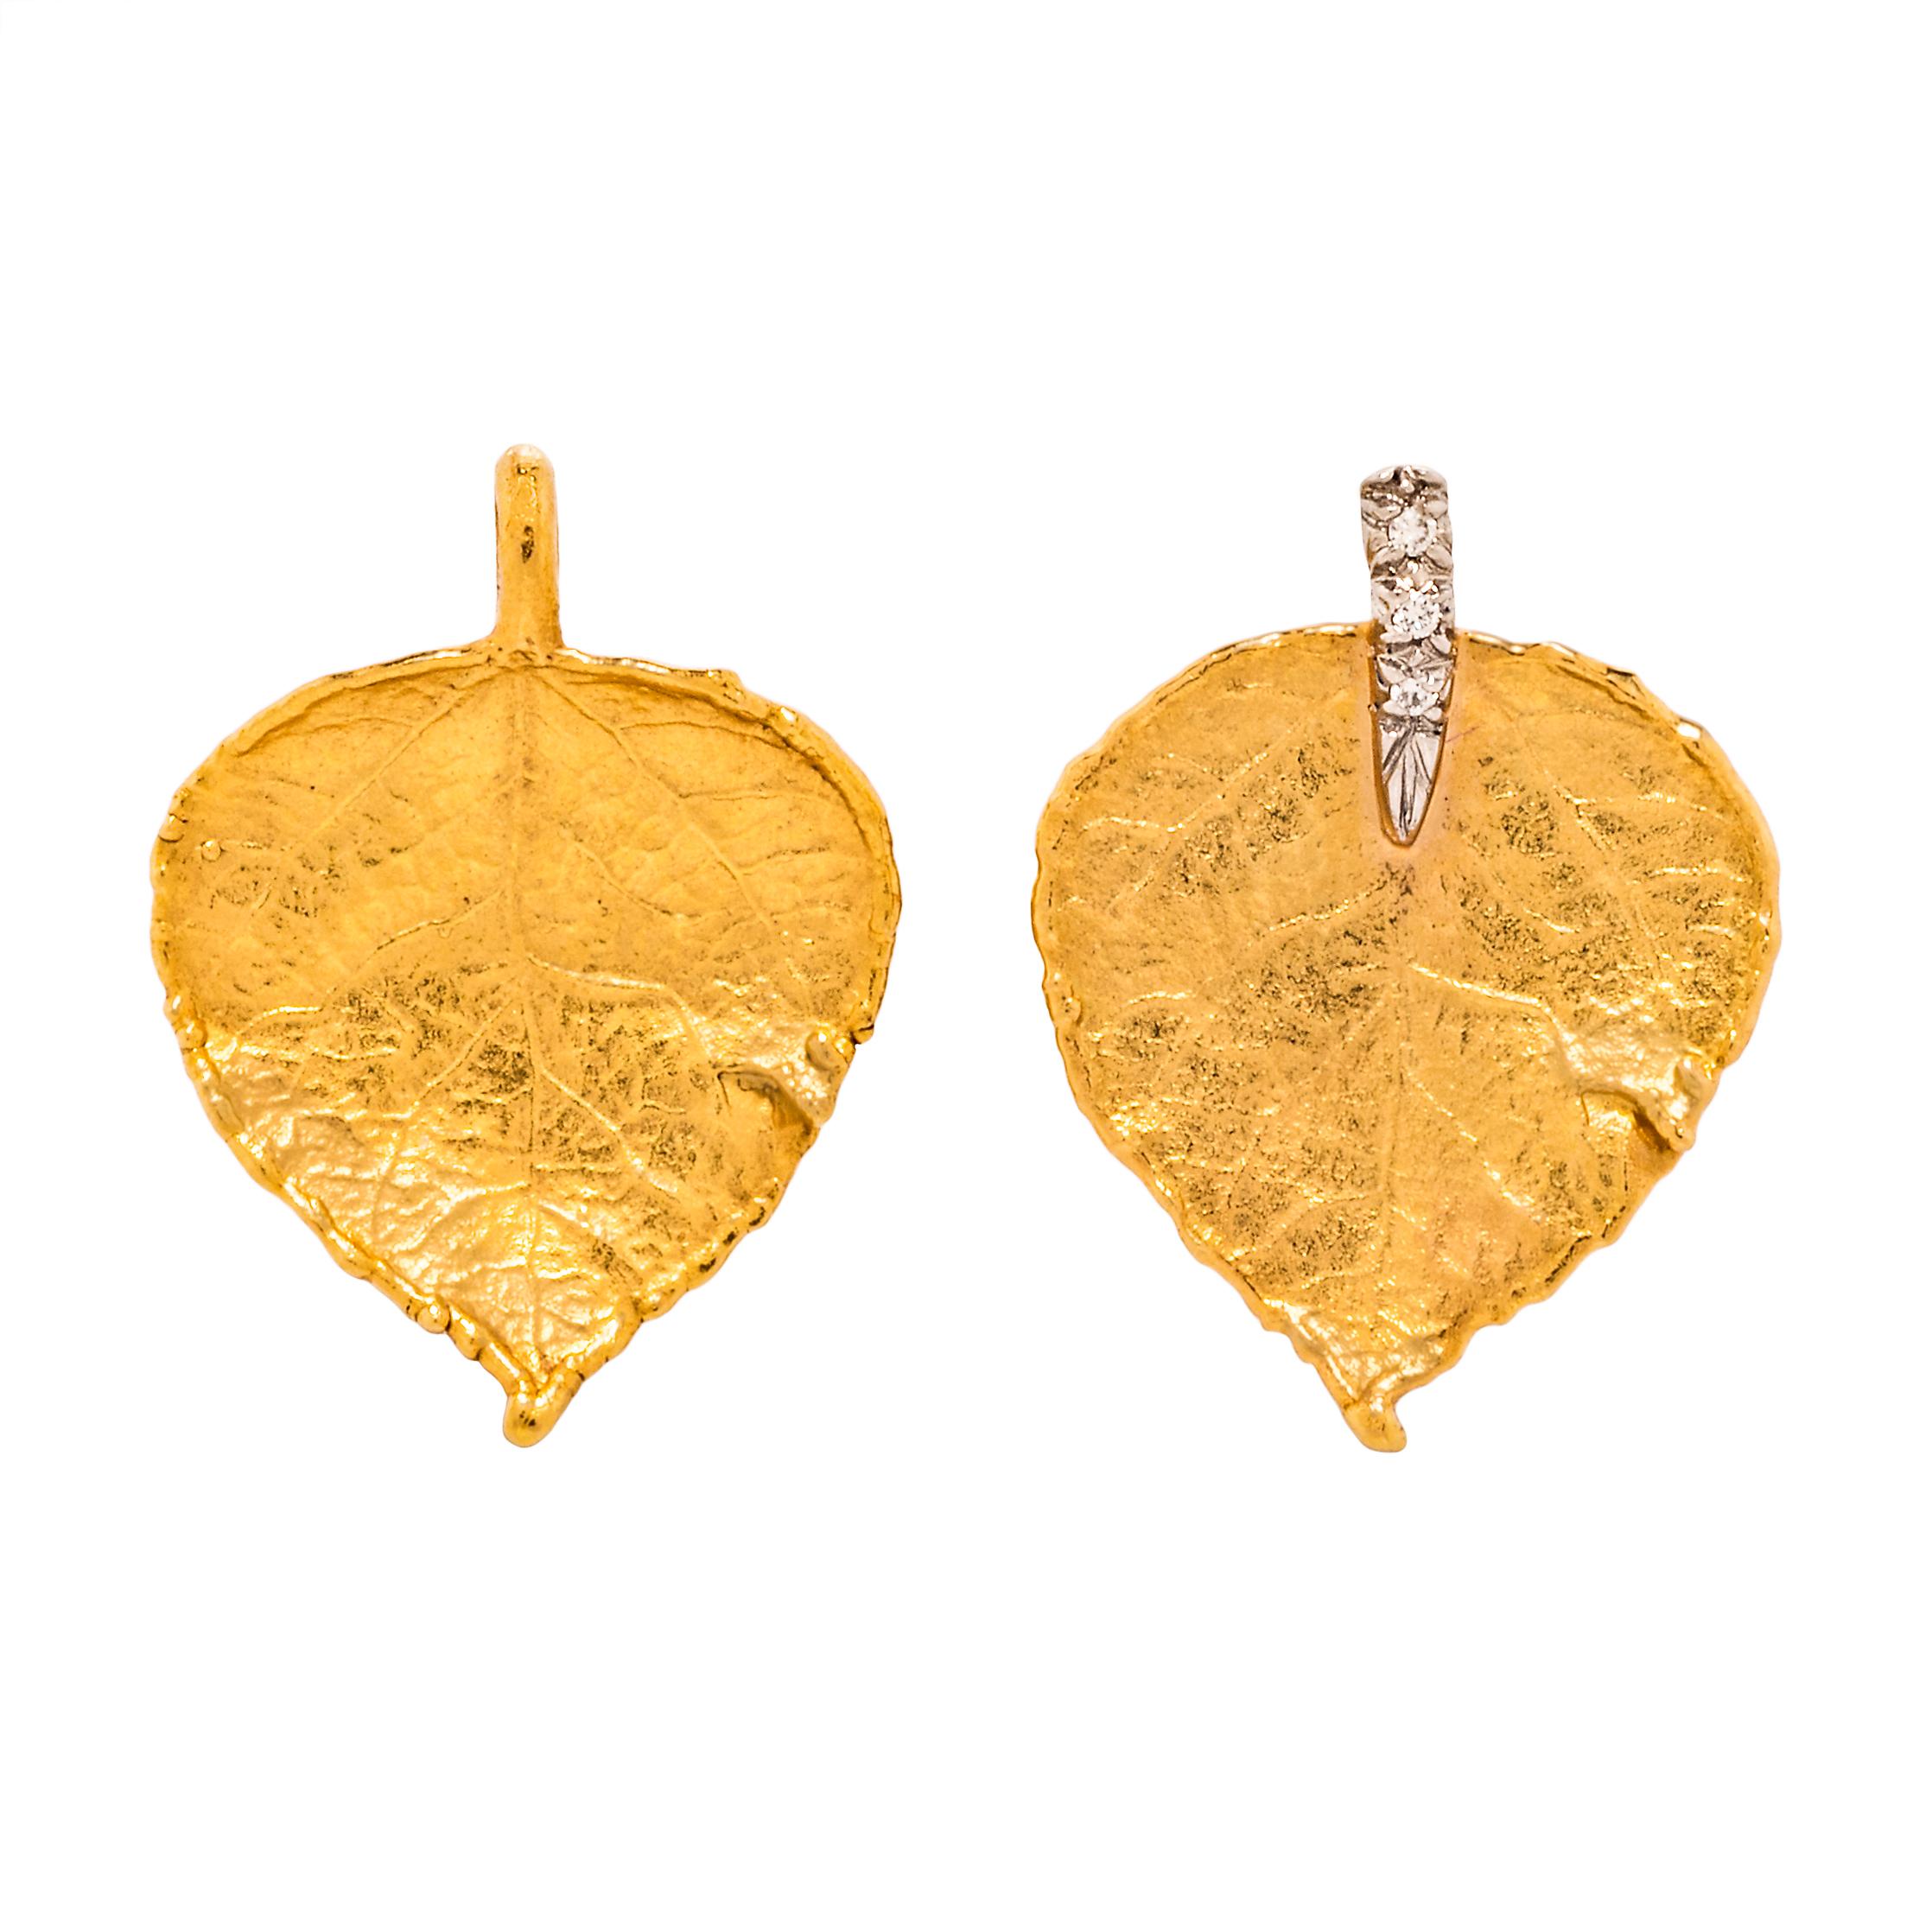 Bestehend aus einer Halskette mit einer Reihe von Gliedern in Form von Blättern aus 19 Karat und 18 Karat Gelbgold in verschiedenen Formen, mit Herstellermarke 